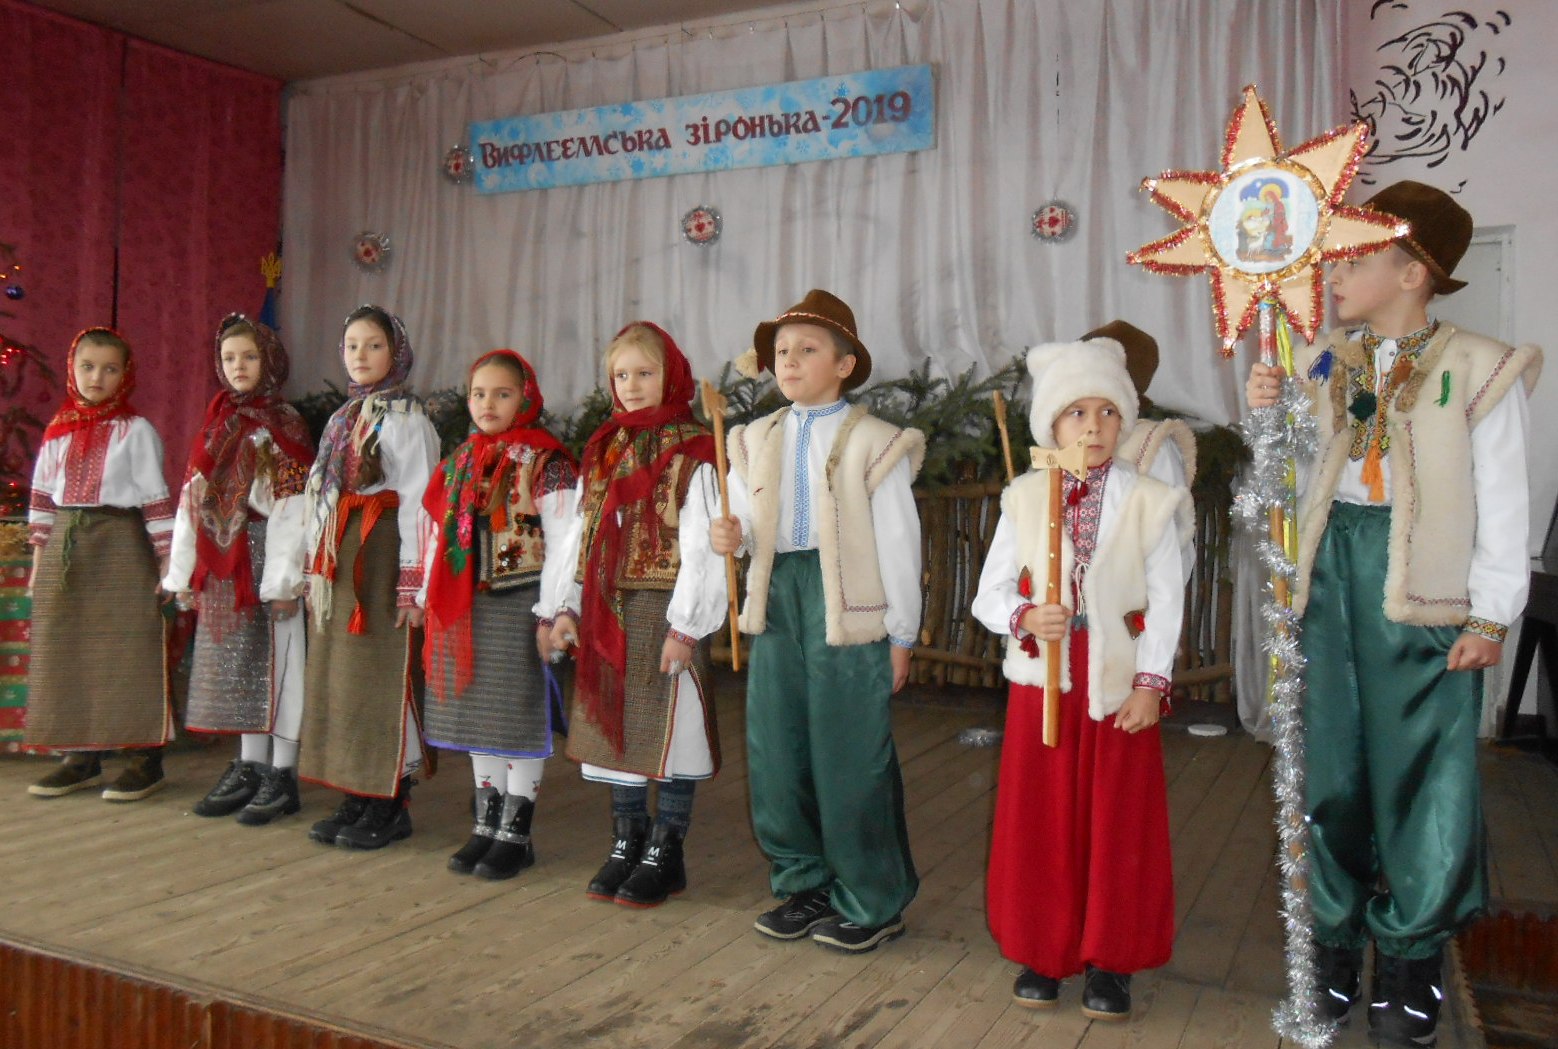 Фестиваль колядок "Вифлеємська зірочка-2019" розпочався з Ясінів на Рахівщині (ФОТО)